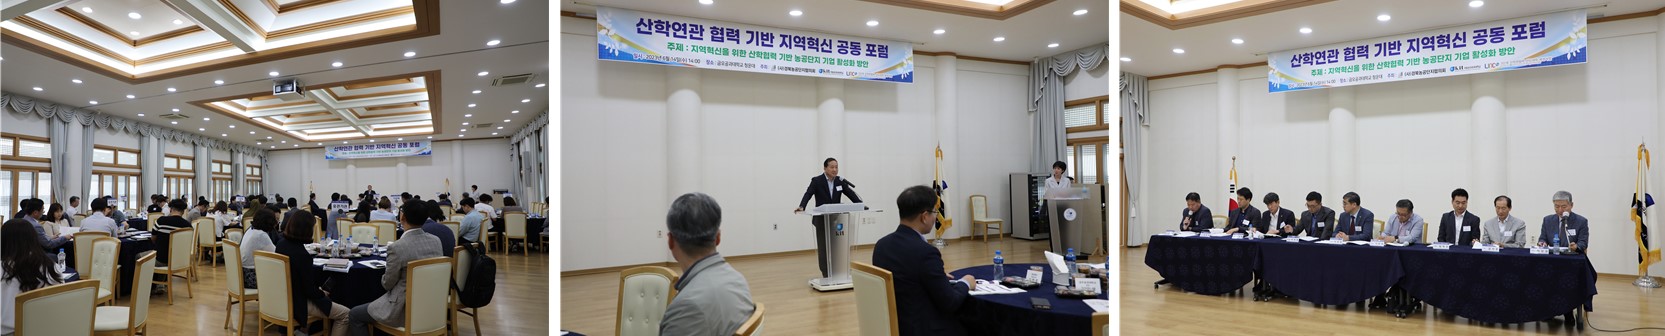 산학연관 협력 기반 지역혁신 포럼 개최